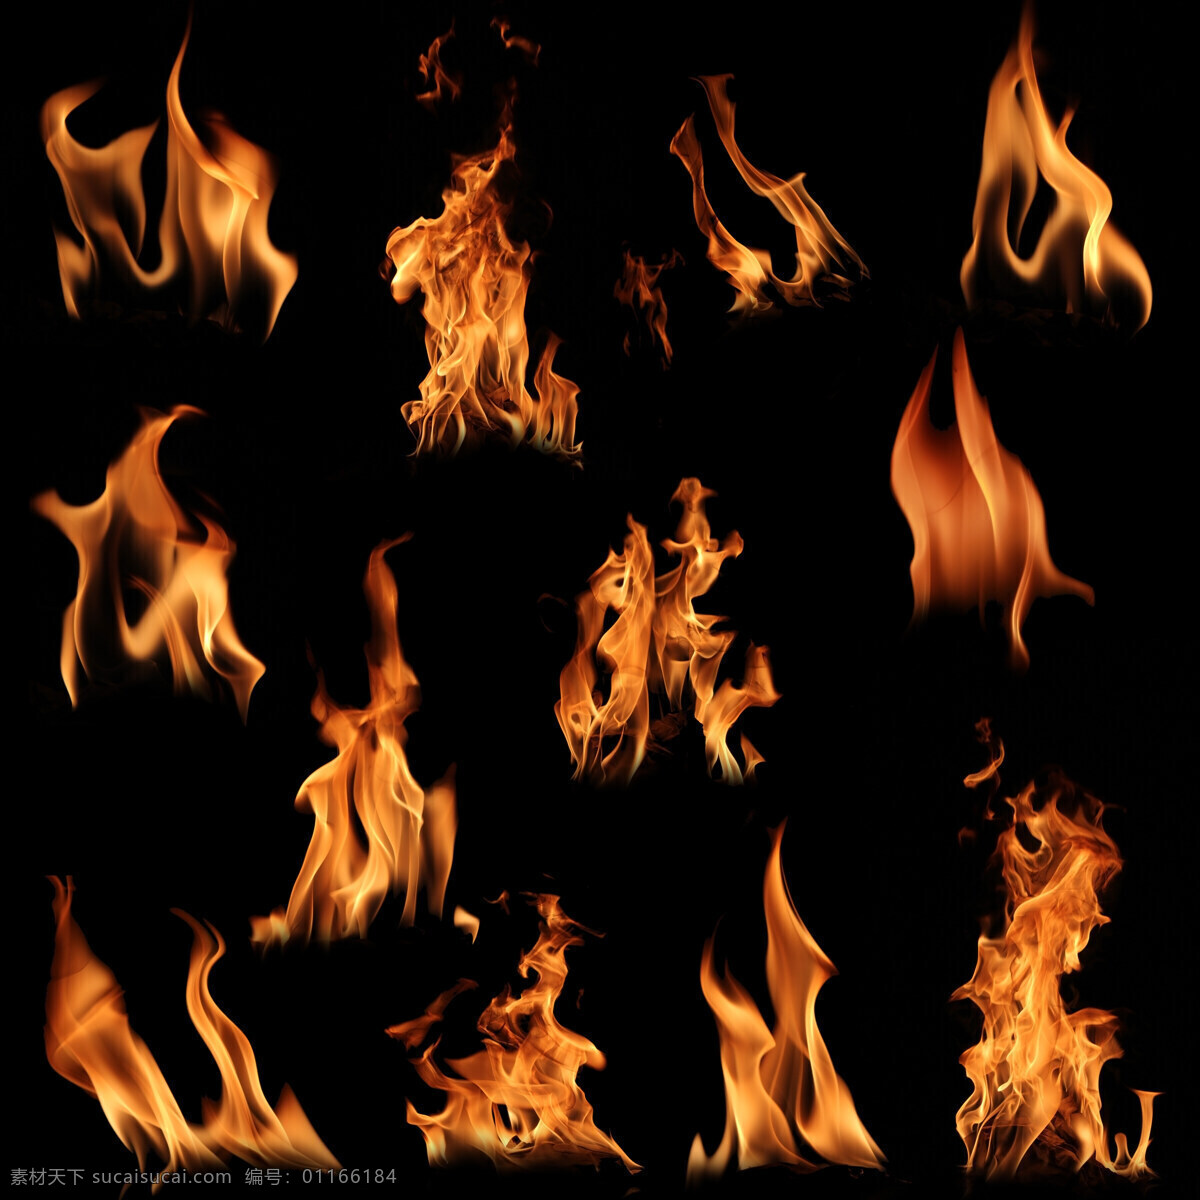 火苗 火焰 燃烧 大火 火焰摄影 火焰素材 火焰图片 生活百科